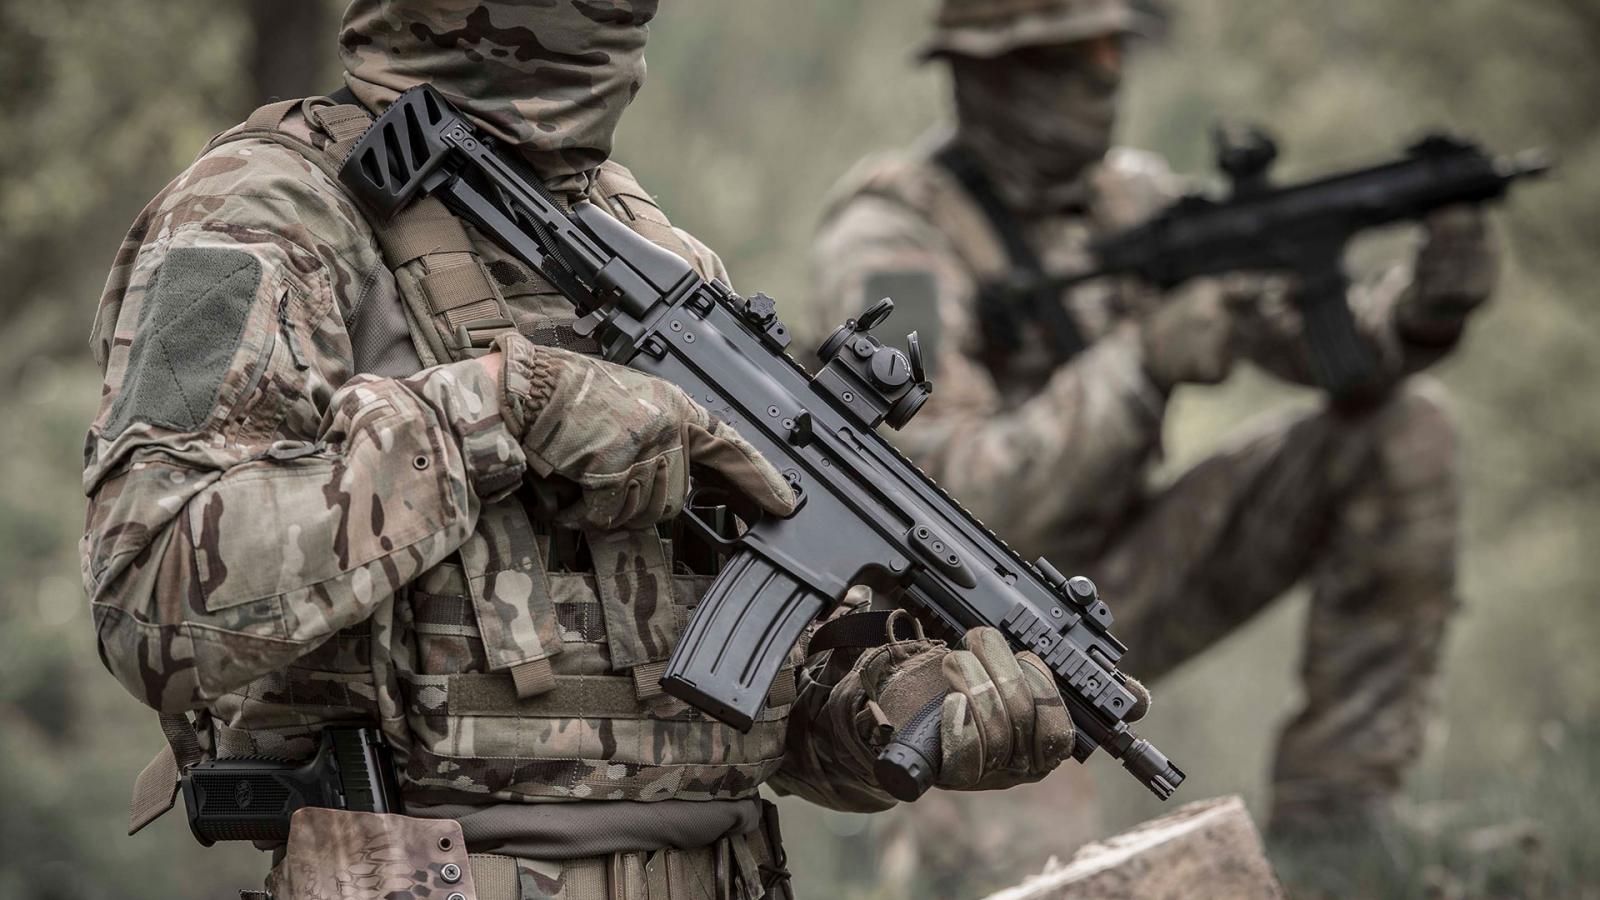 FN SCAR®-SC Subcompact Carbine in 5.56x45mm NATO or 7.62x35mm/.300 BLK calibre.